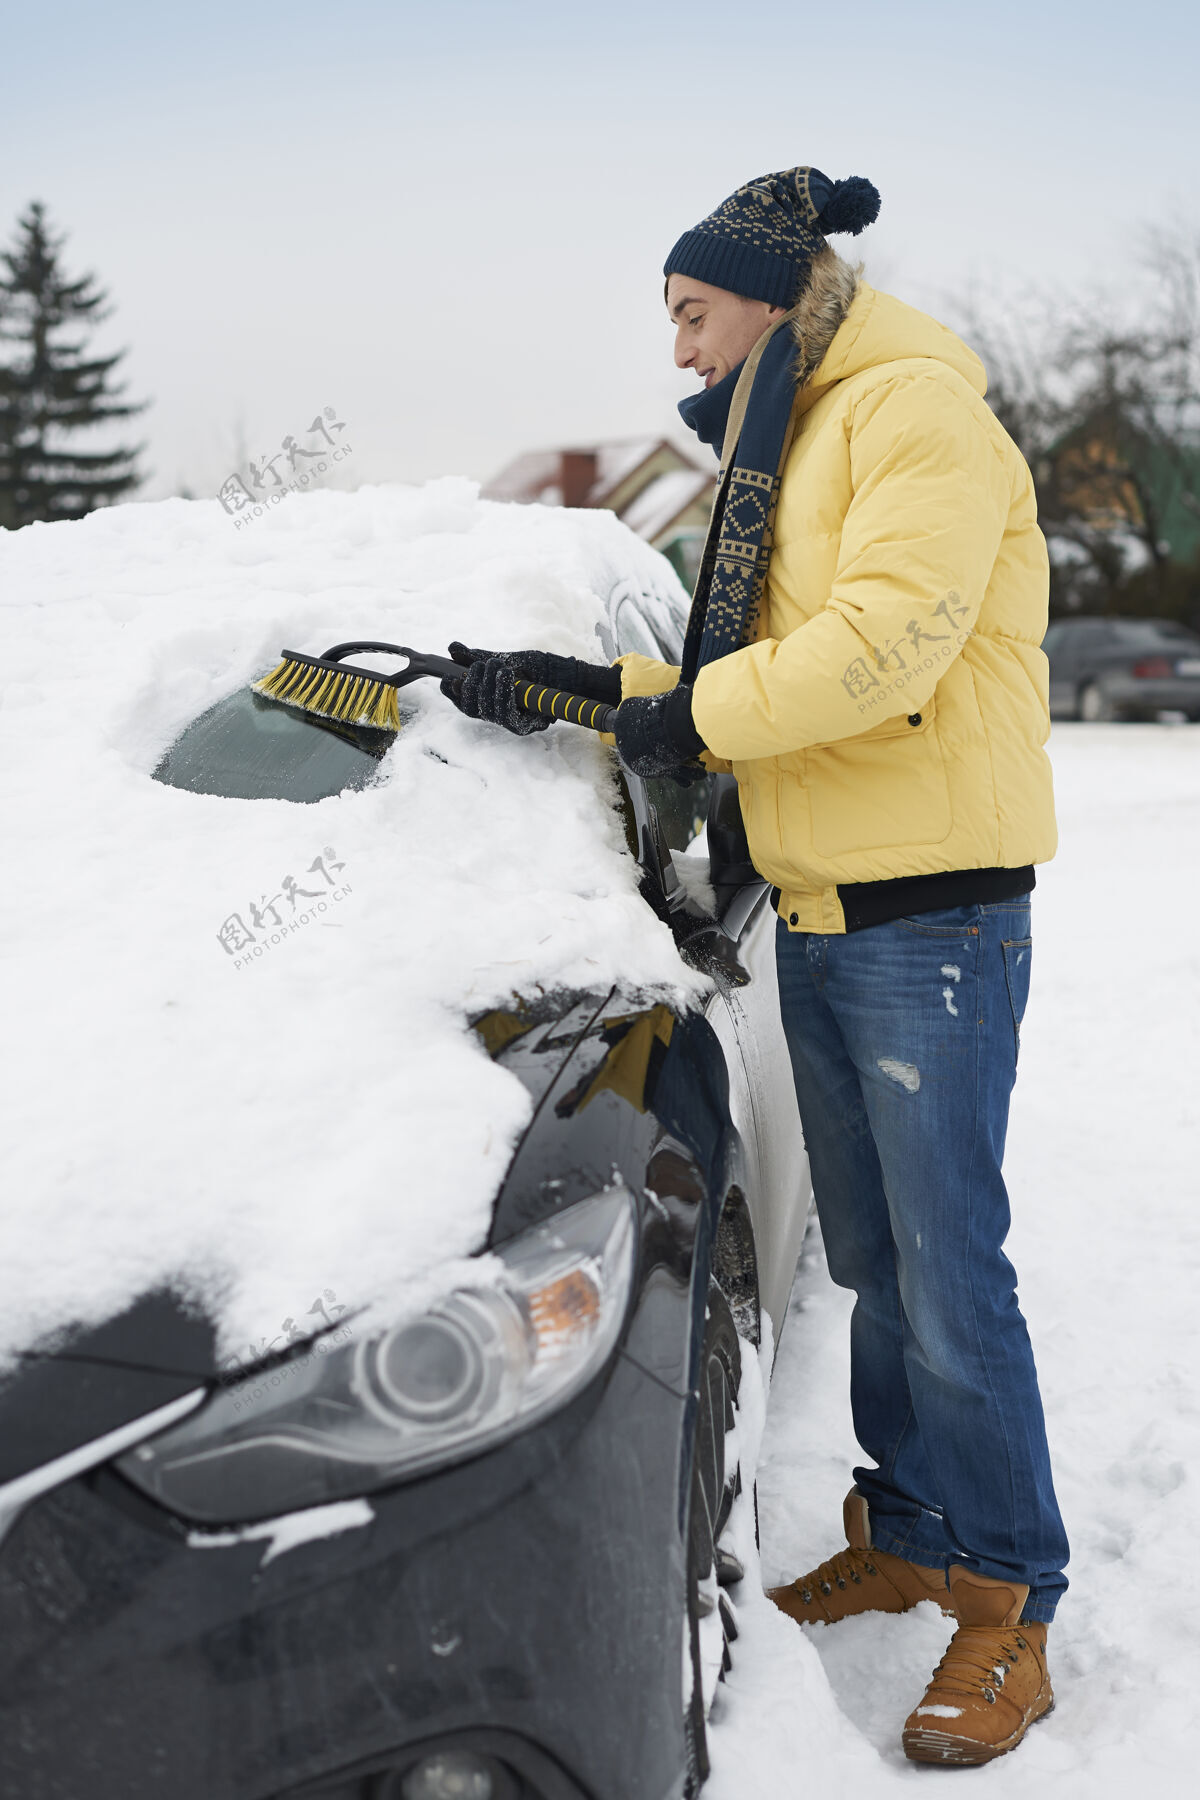 微笑暴风雪过后 汽车需要清理积雪享受休闲搬家